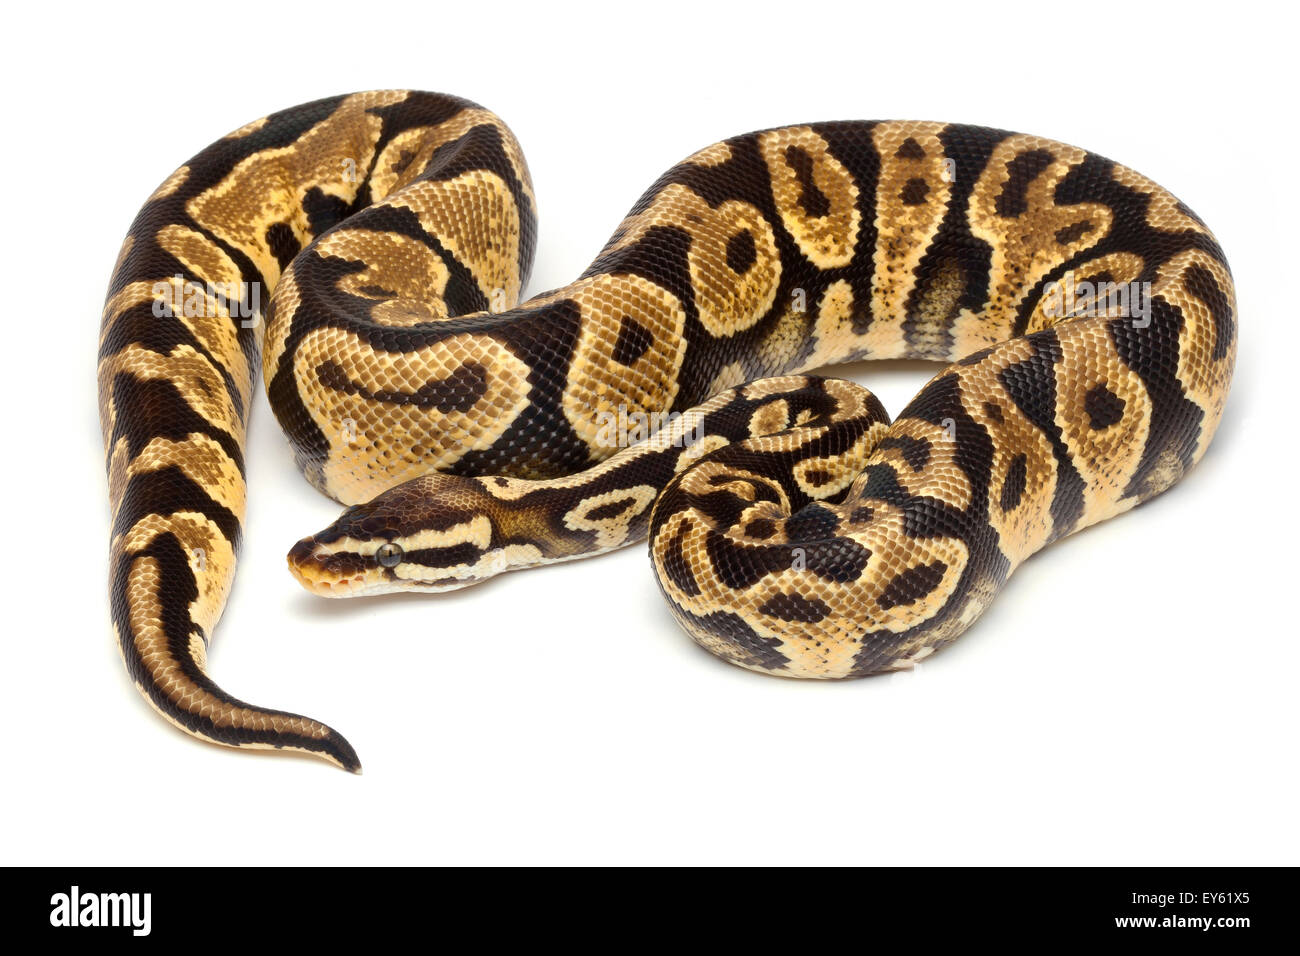 Rey 'Python' de vientre amarillo pastel sobre fondo blanco. Foto de stock